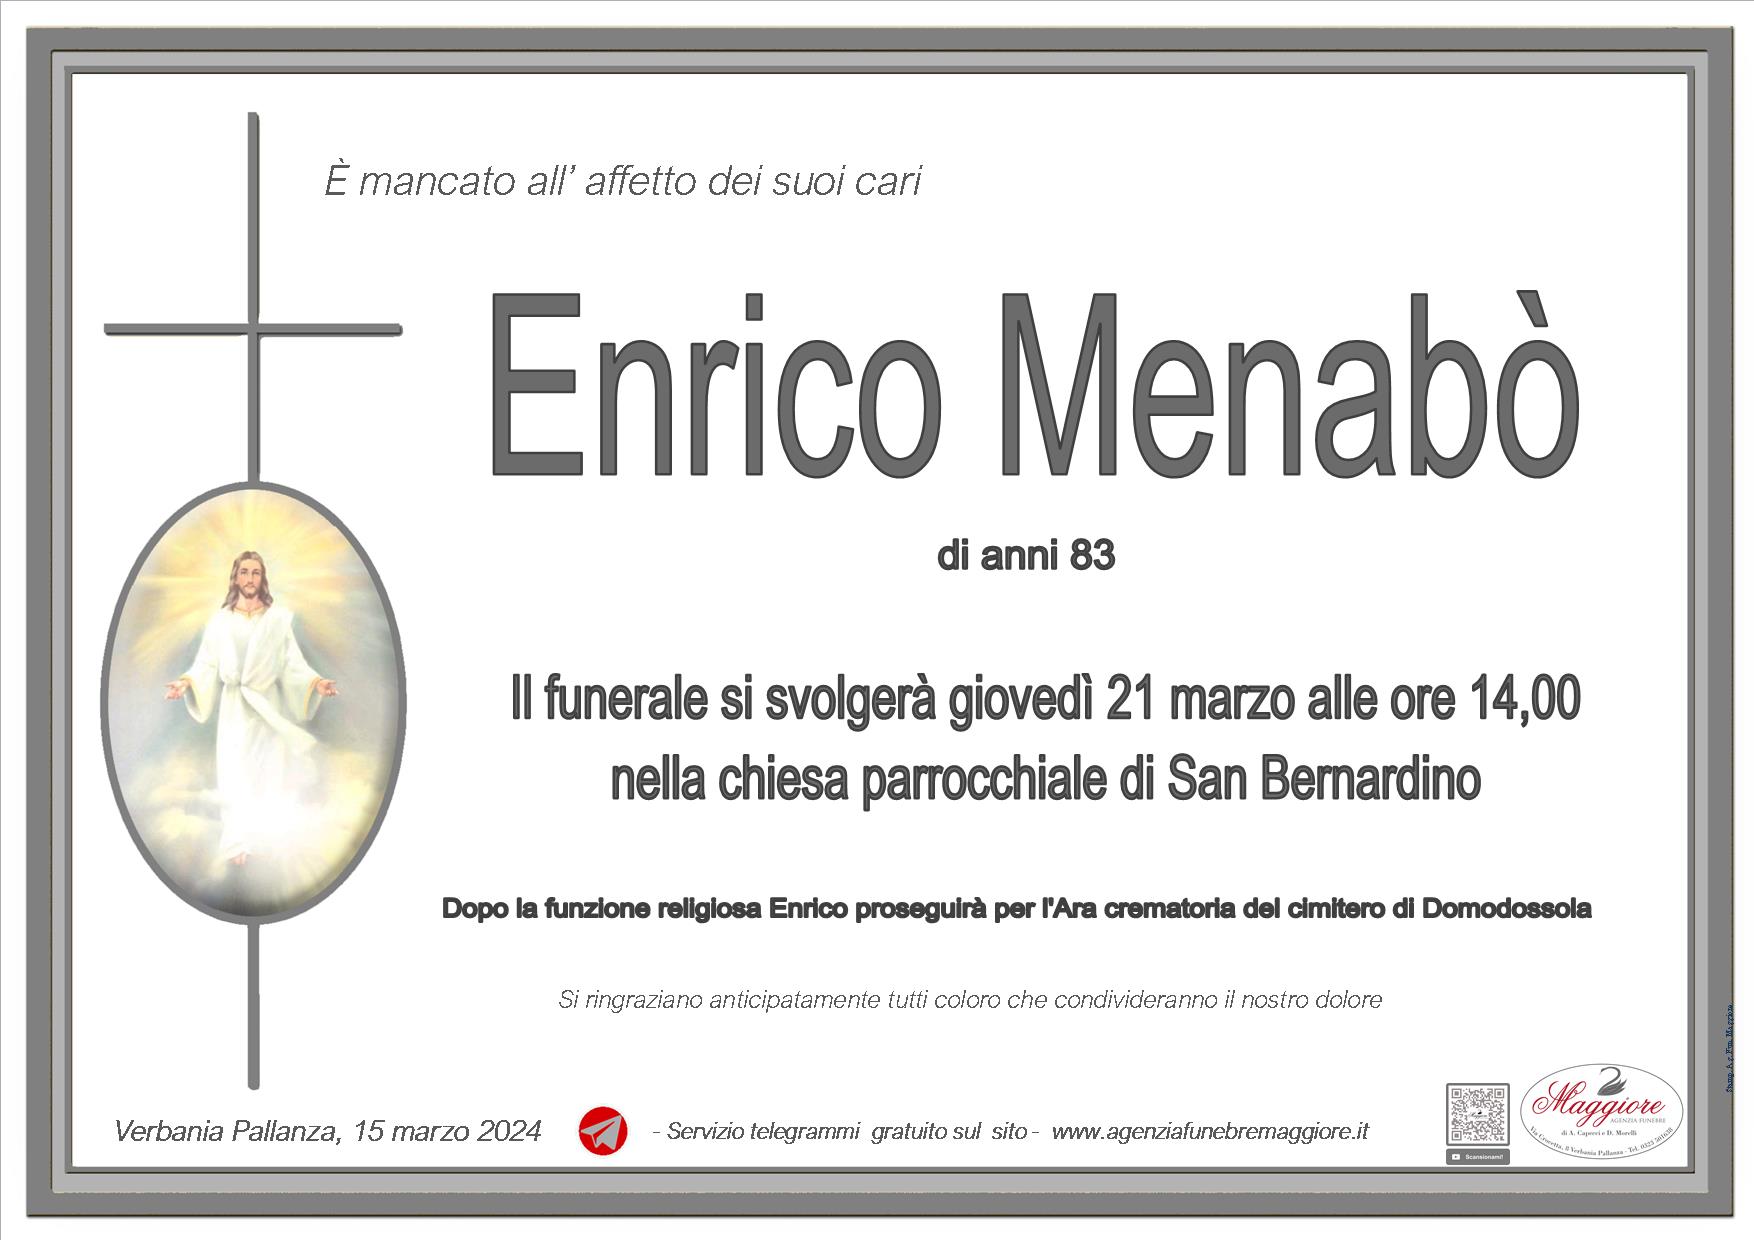 Enrico Menabò